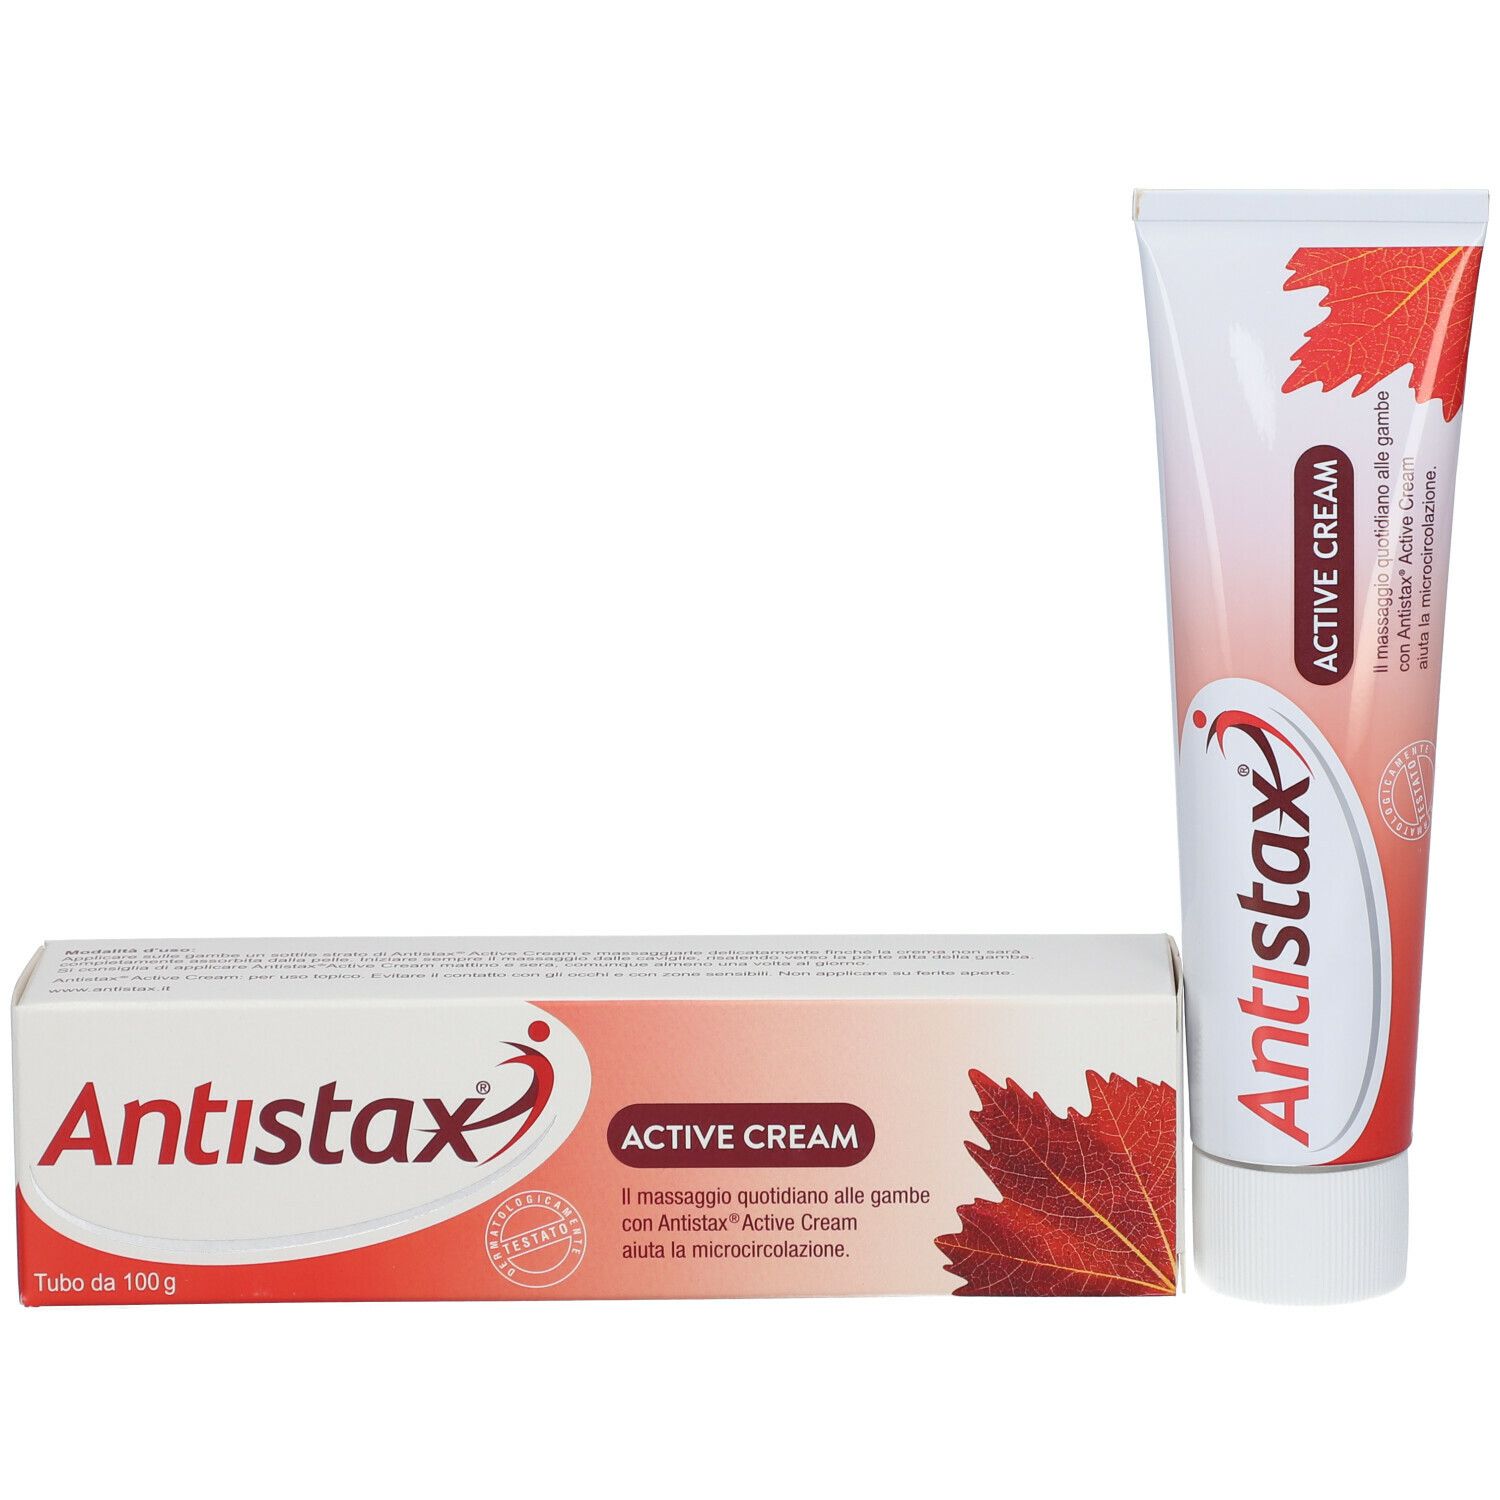 Antistax® Active Cream